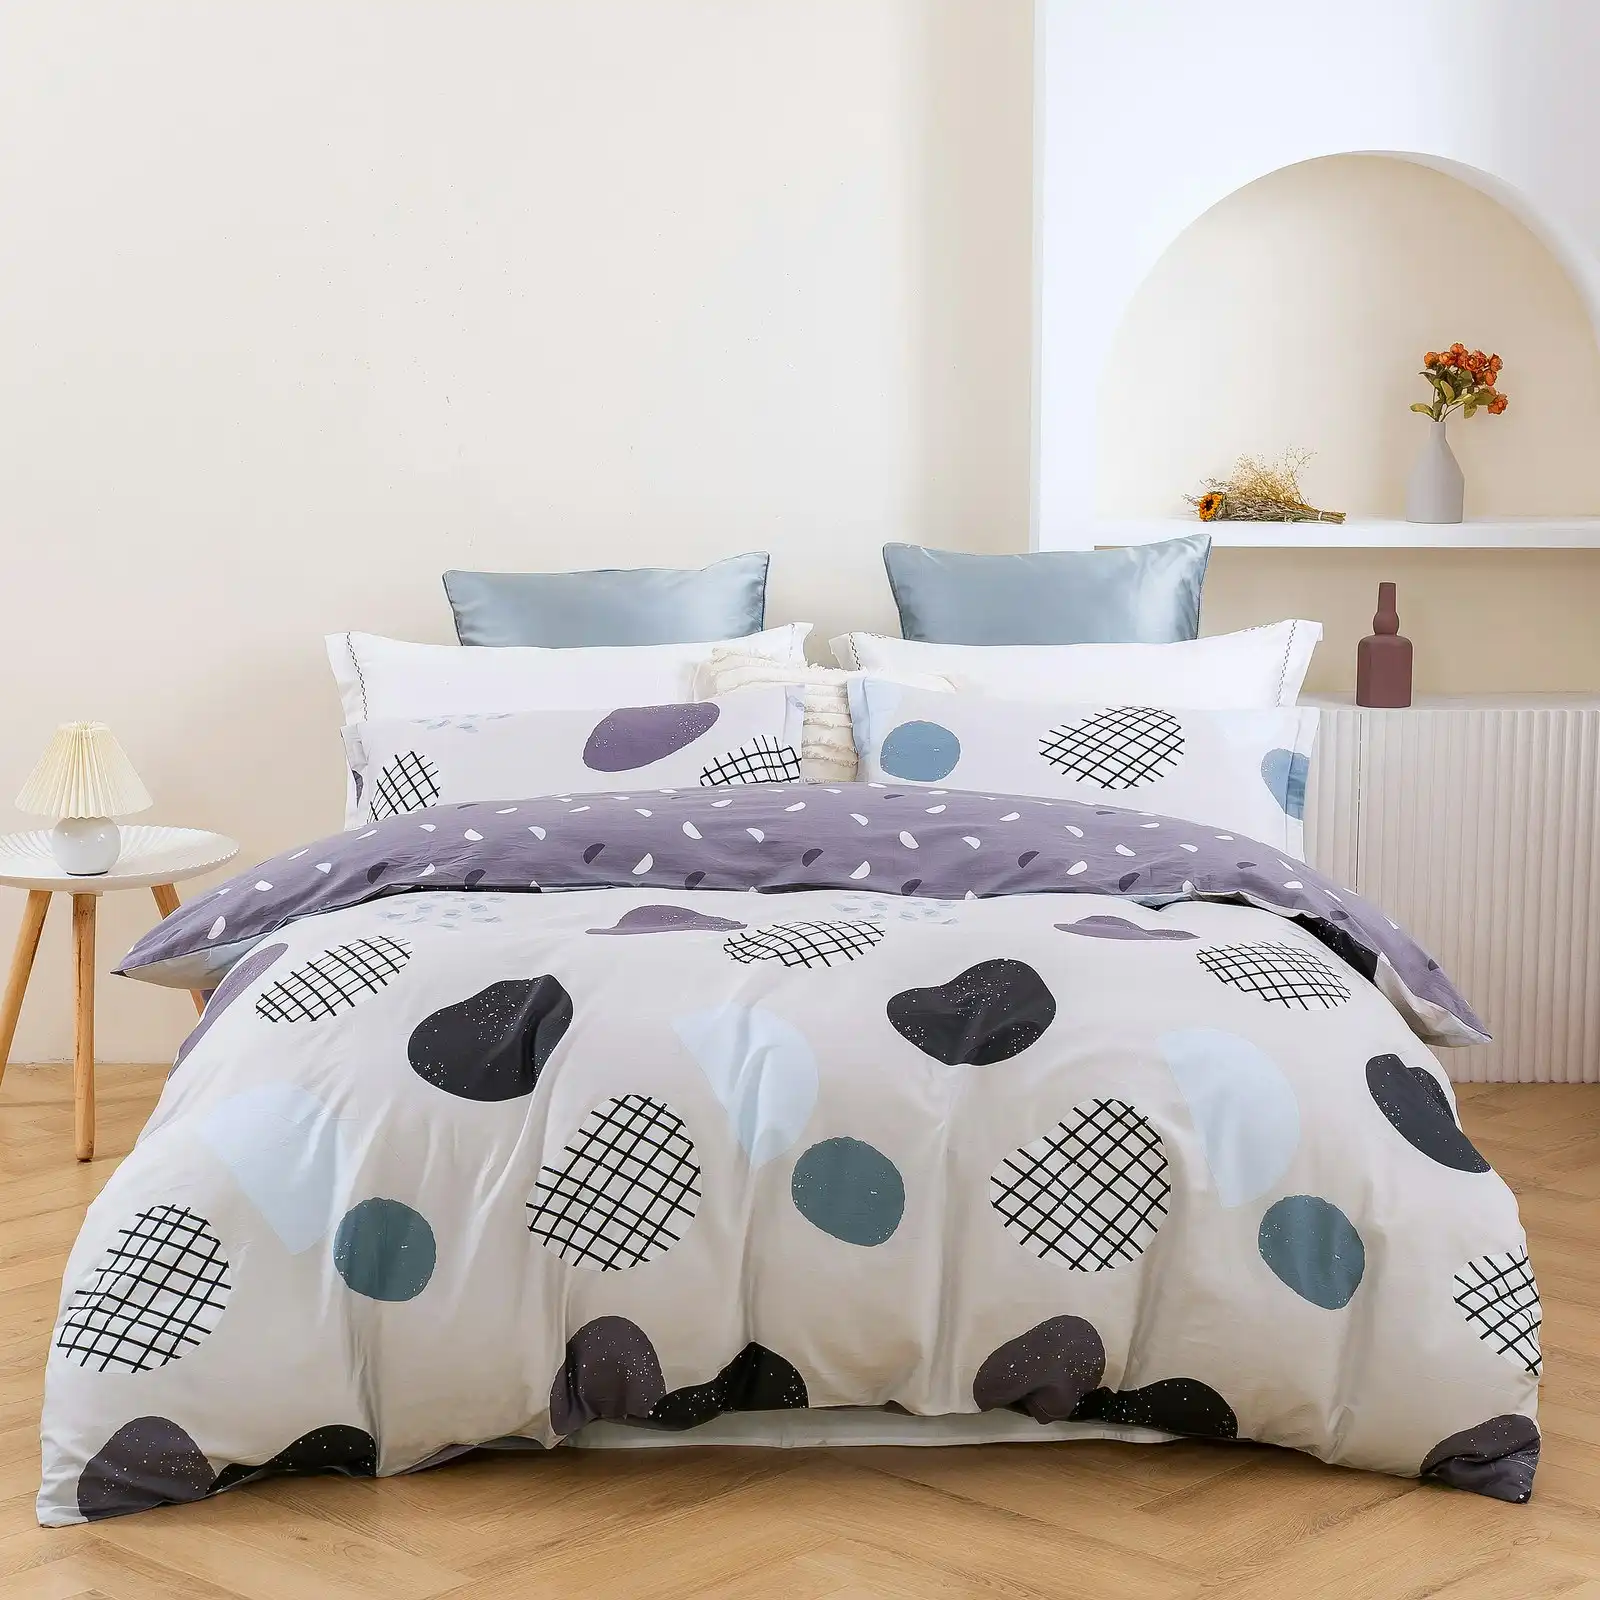 Dreamaker Orion 100% Cotton Reversible Quilt Cover Set Double Bed